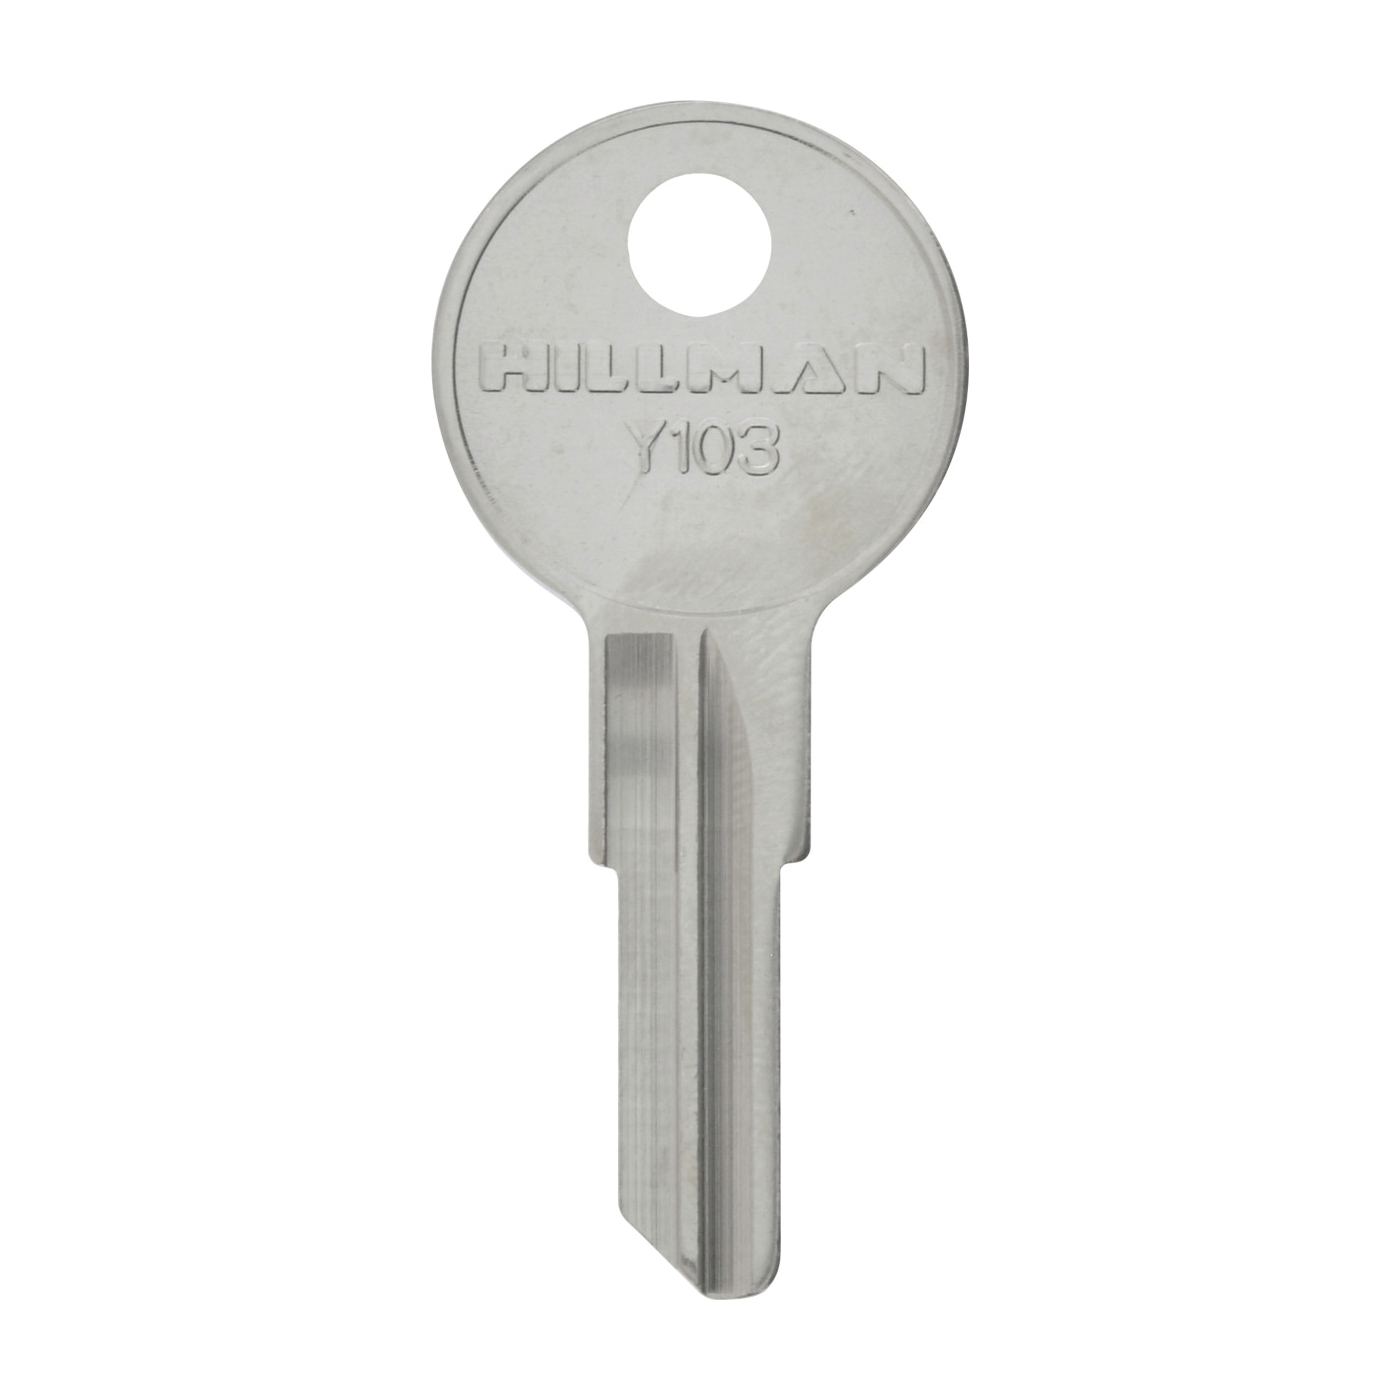 Hillman 441560 Key, For: Yale Locks